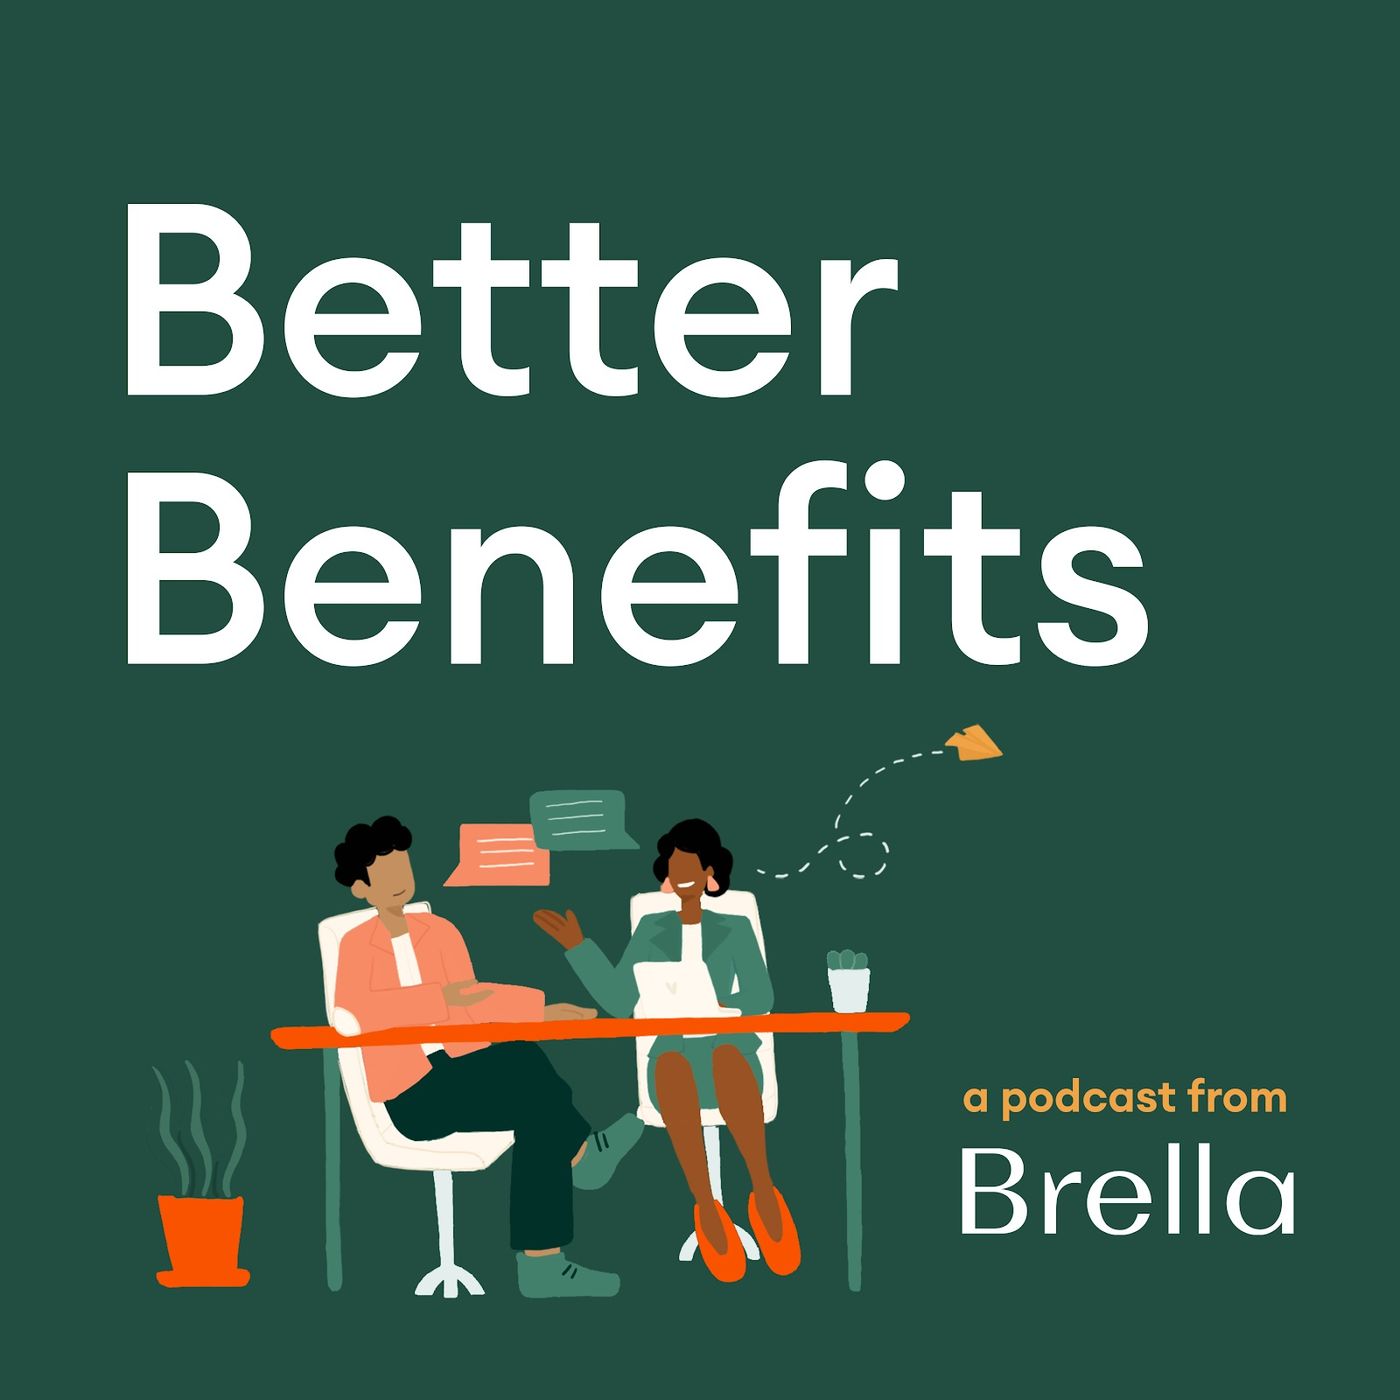 Artwork for podcast Better Benefits